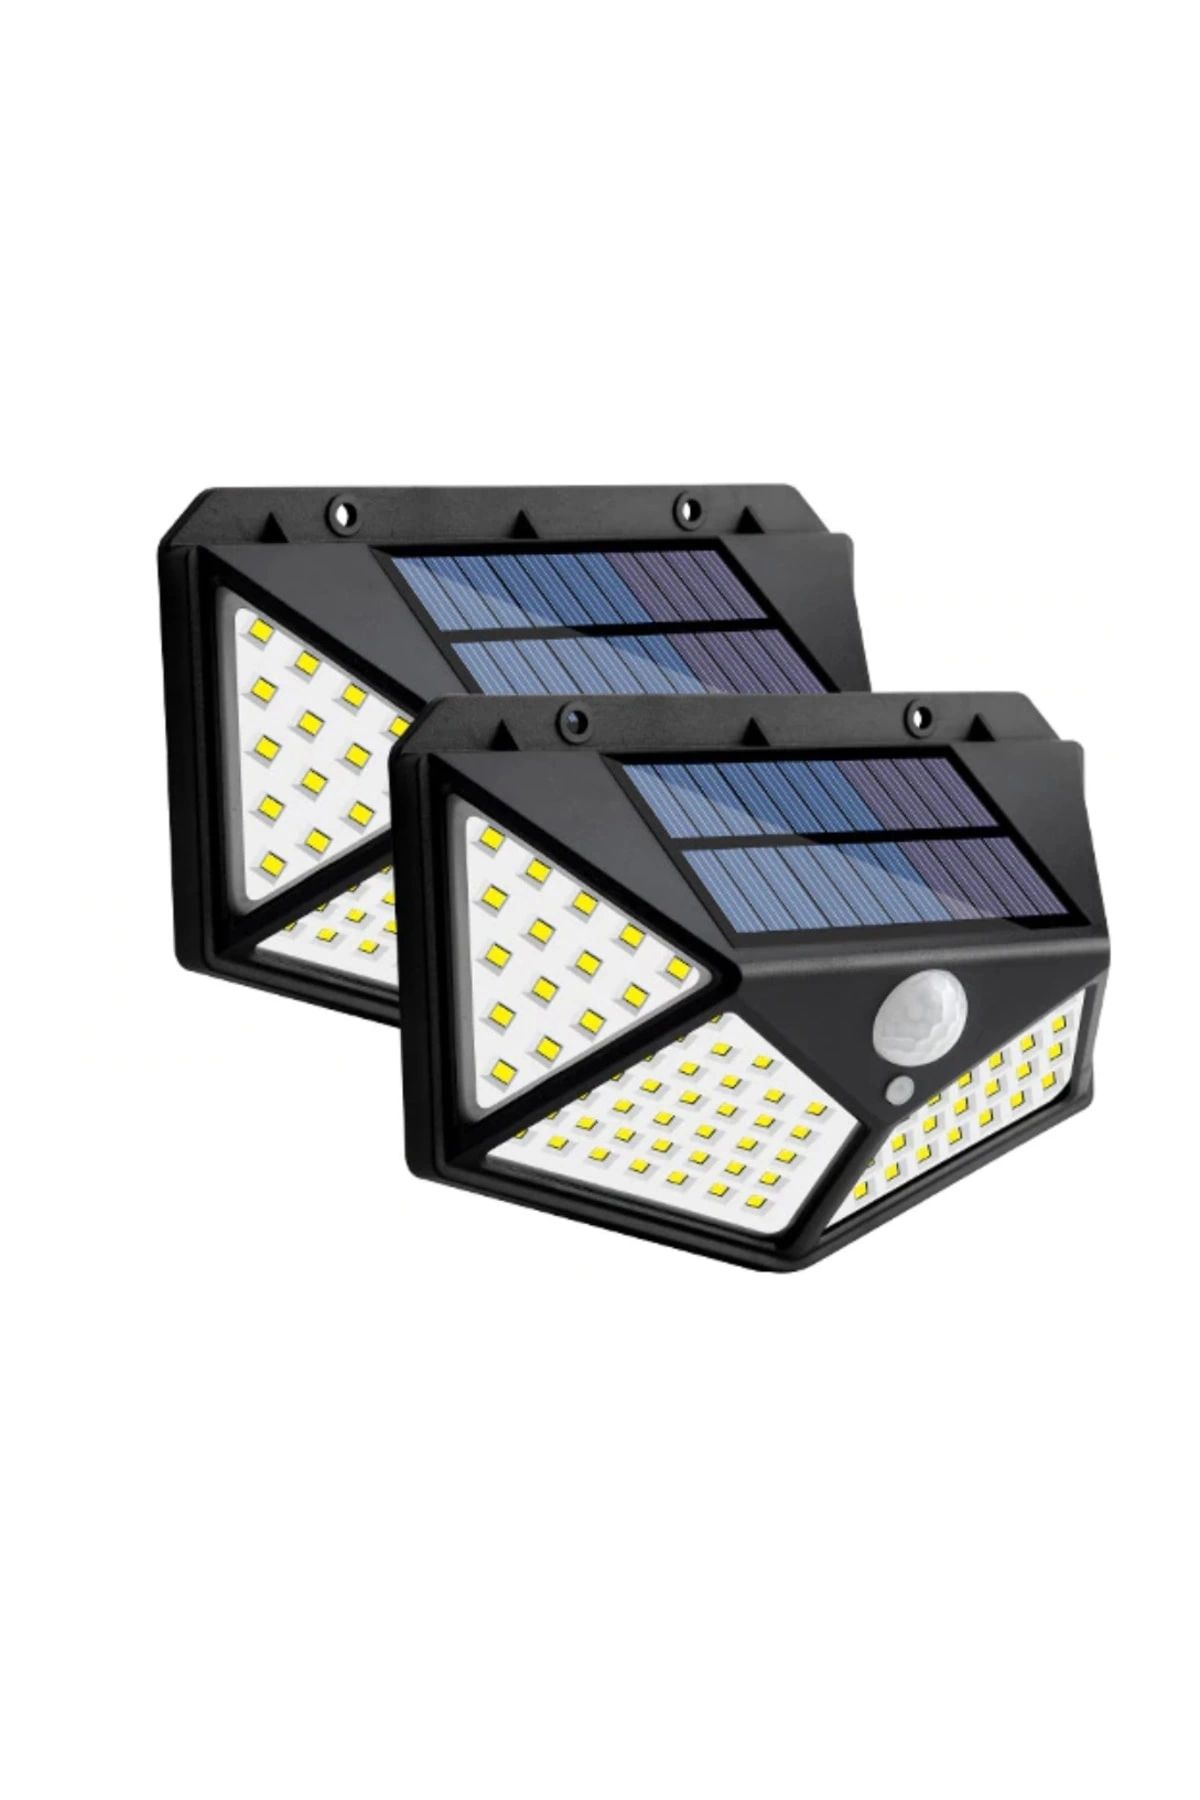 ZAUSS 2 Adet Solar Güneş Enerjili Hareket Sensörlü 4 Taraflı Bahçe Garaj Ev Aydınlatma Lambası